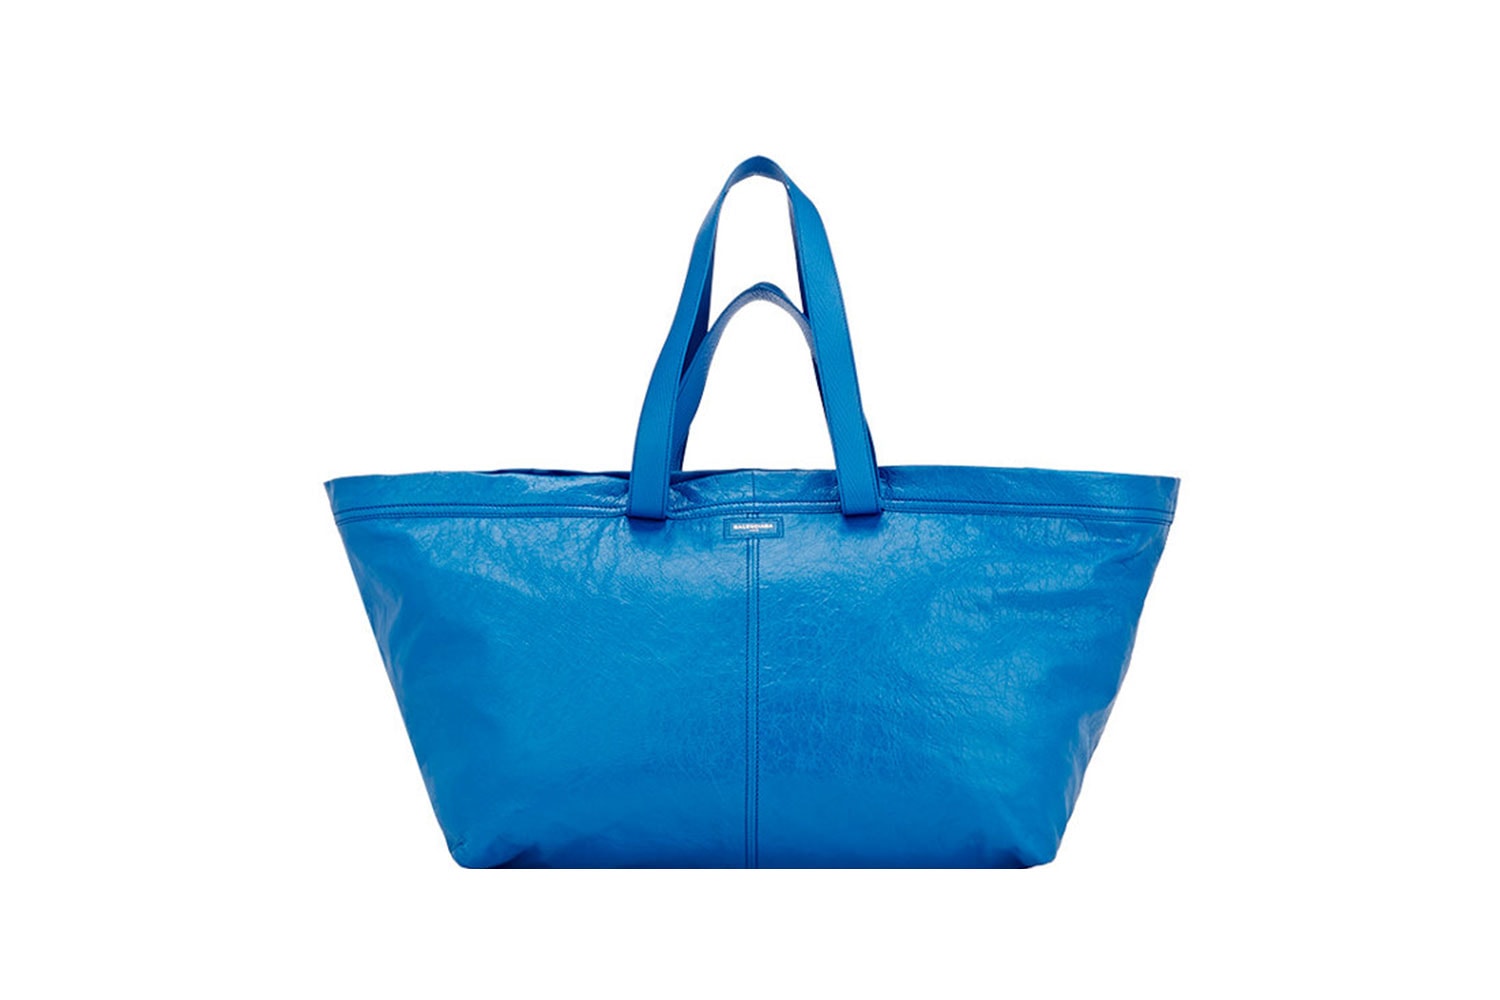 발렌시아가 아레나 엑스트라 라지 쇼퍼백 출시 2017 봄, 여름  balenciaga-ikea-frakta-shopping-bag